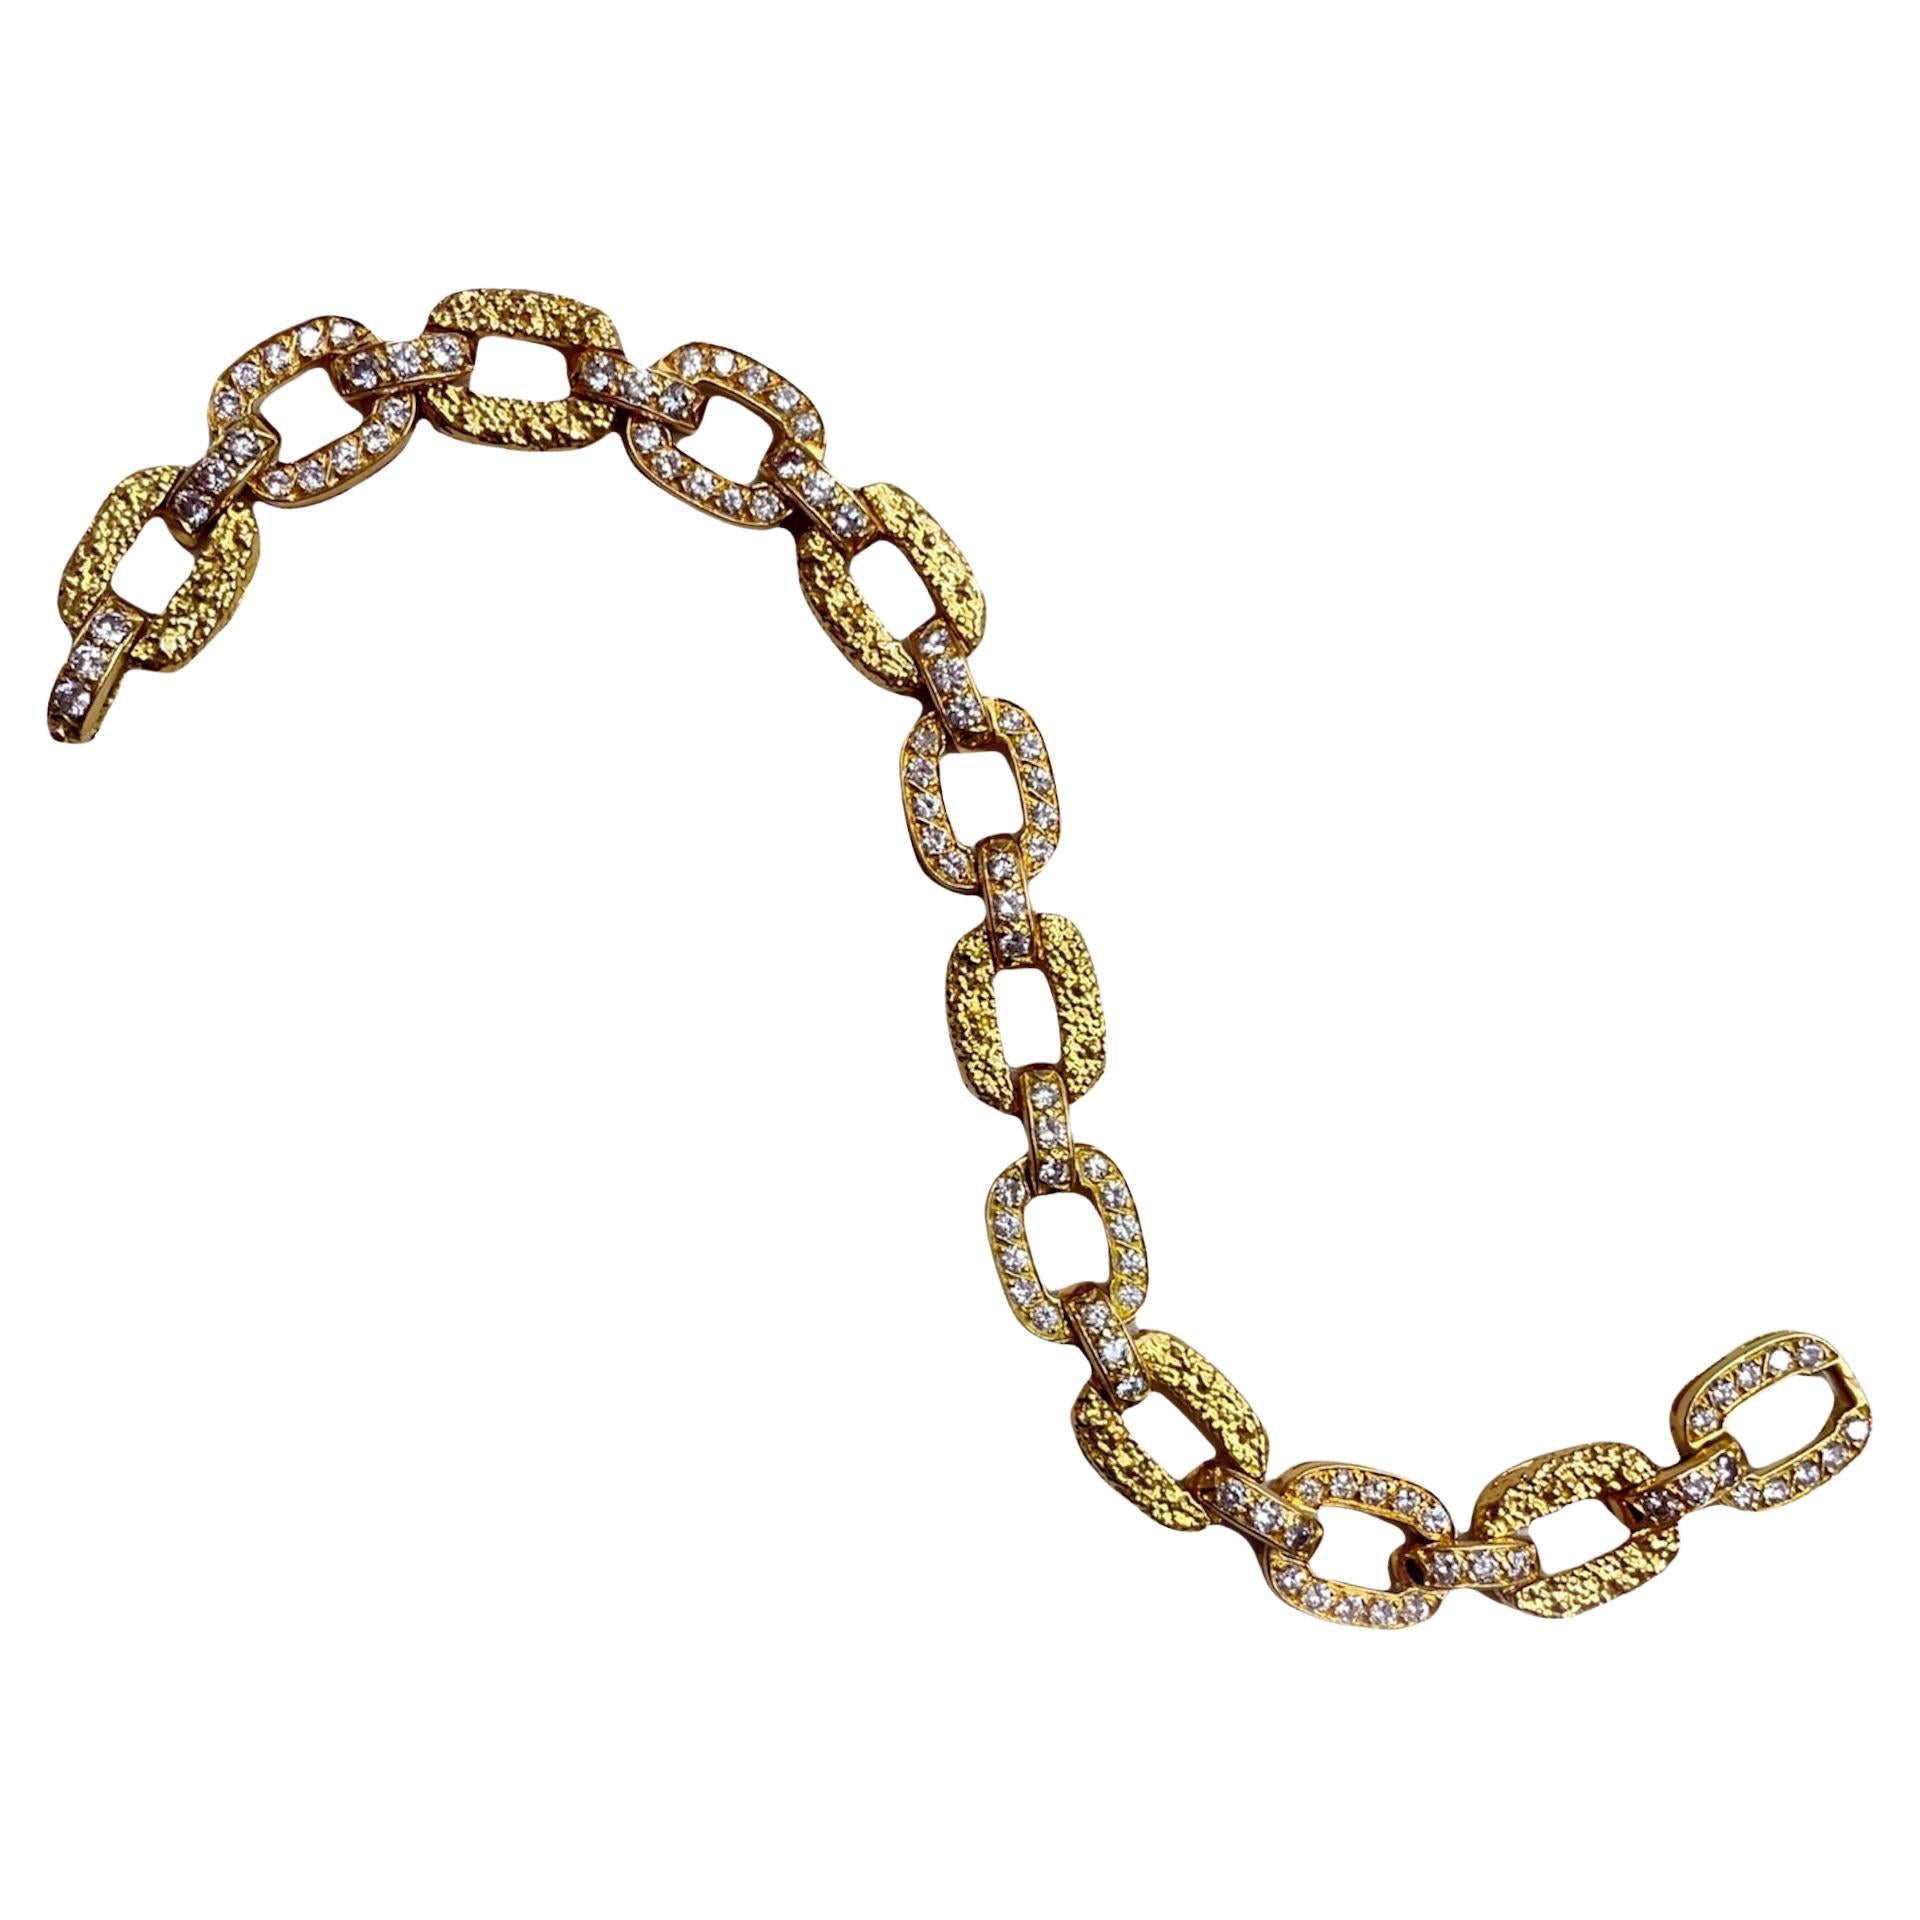 Bracelet Van Cleef and Arpels en or 18k et diamants, vers les années 1940

Un bracelet en diamant et or très chic et très facile à porter, réalisé par Van Cleef & Arpels. Le bracelet alterne des maillons en diamant (environ 7 carats) et des maillons